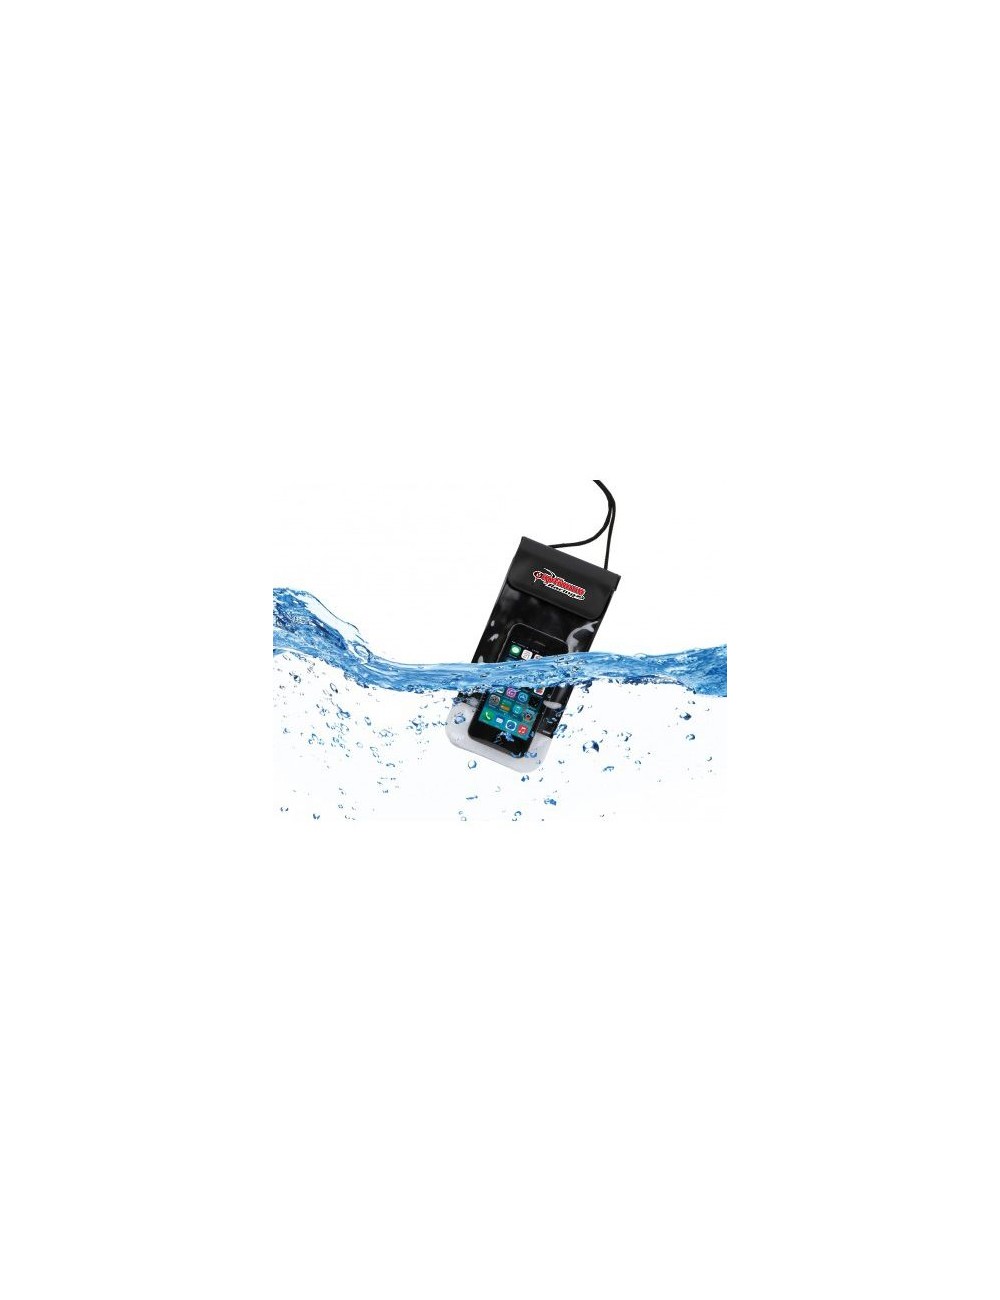 Pocket Optimum waterproof for mobile